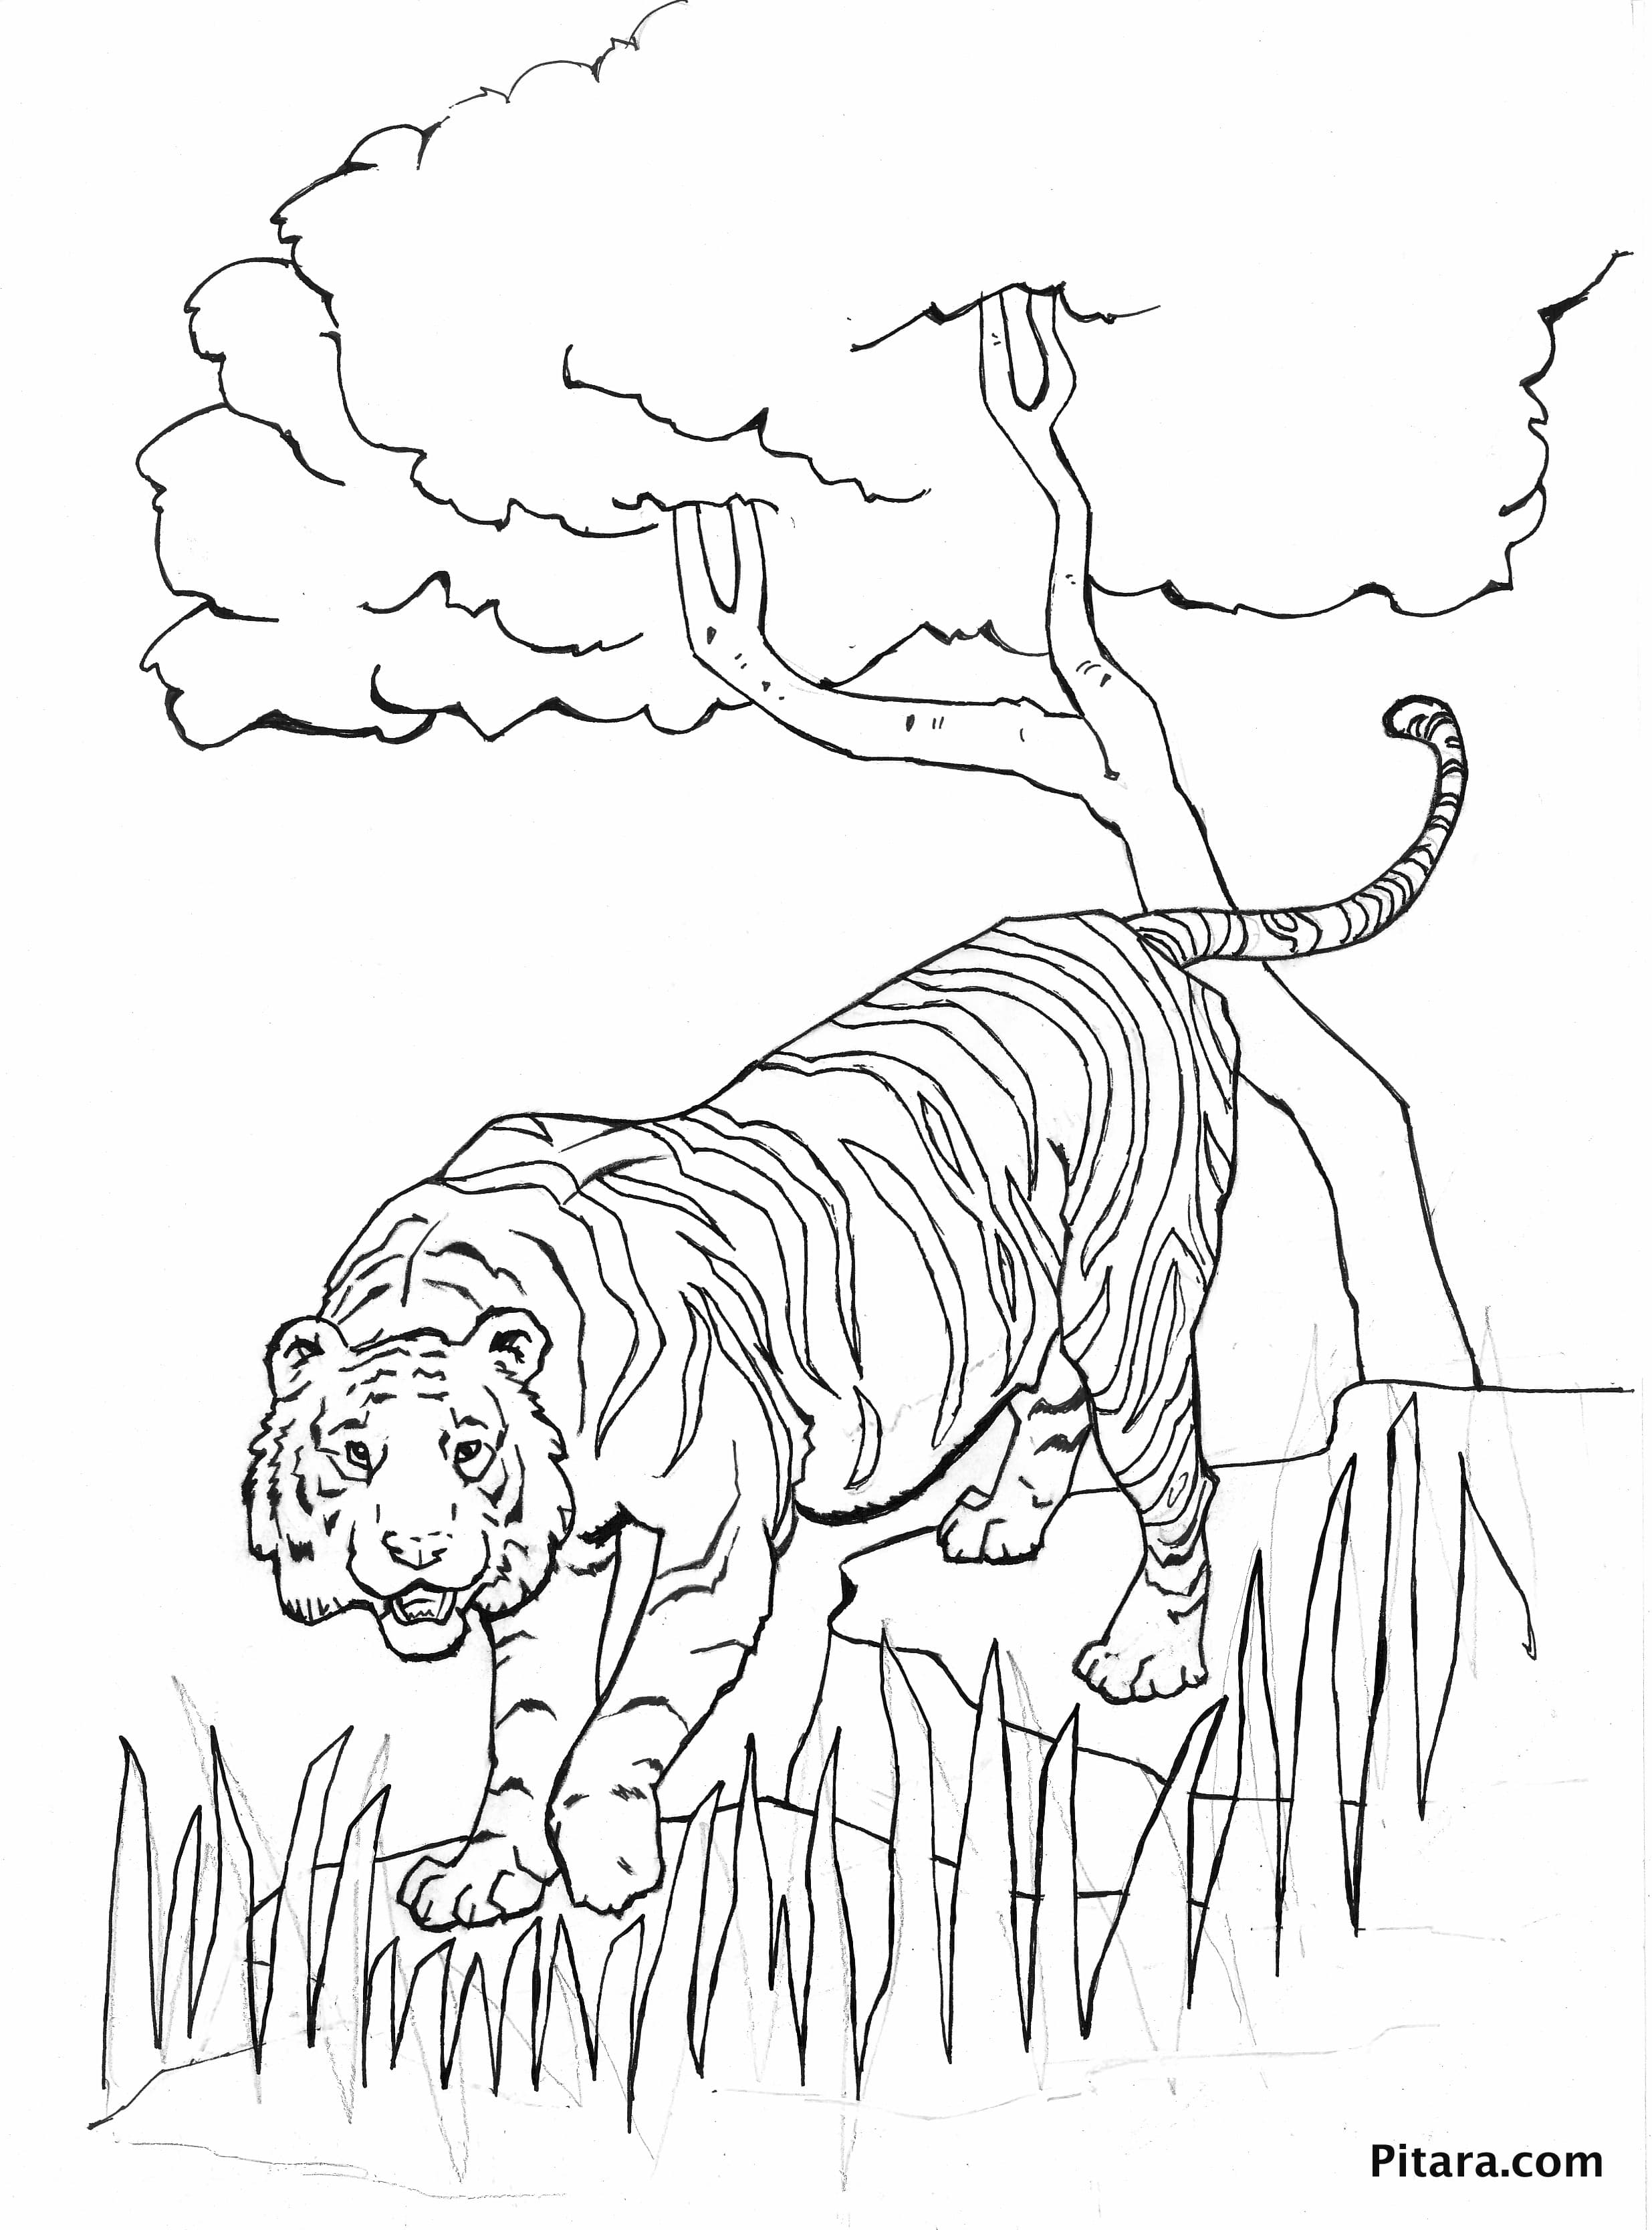 Tiger – Coloring page | Pitara Kids Network